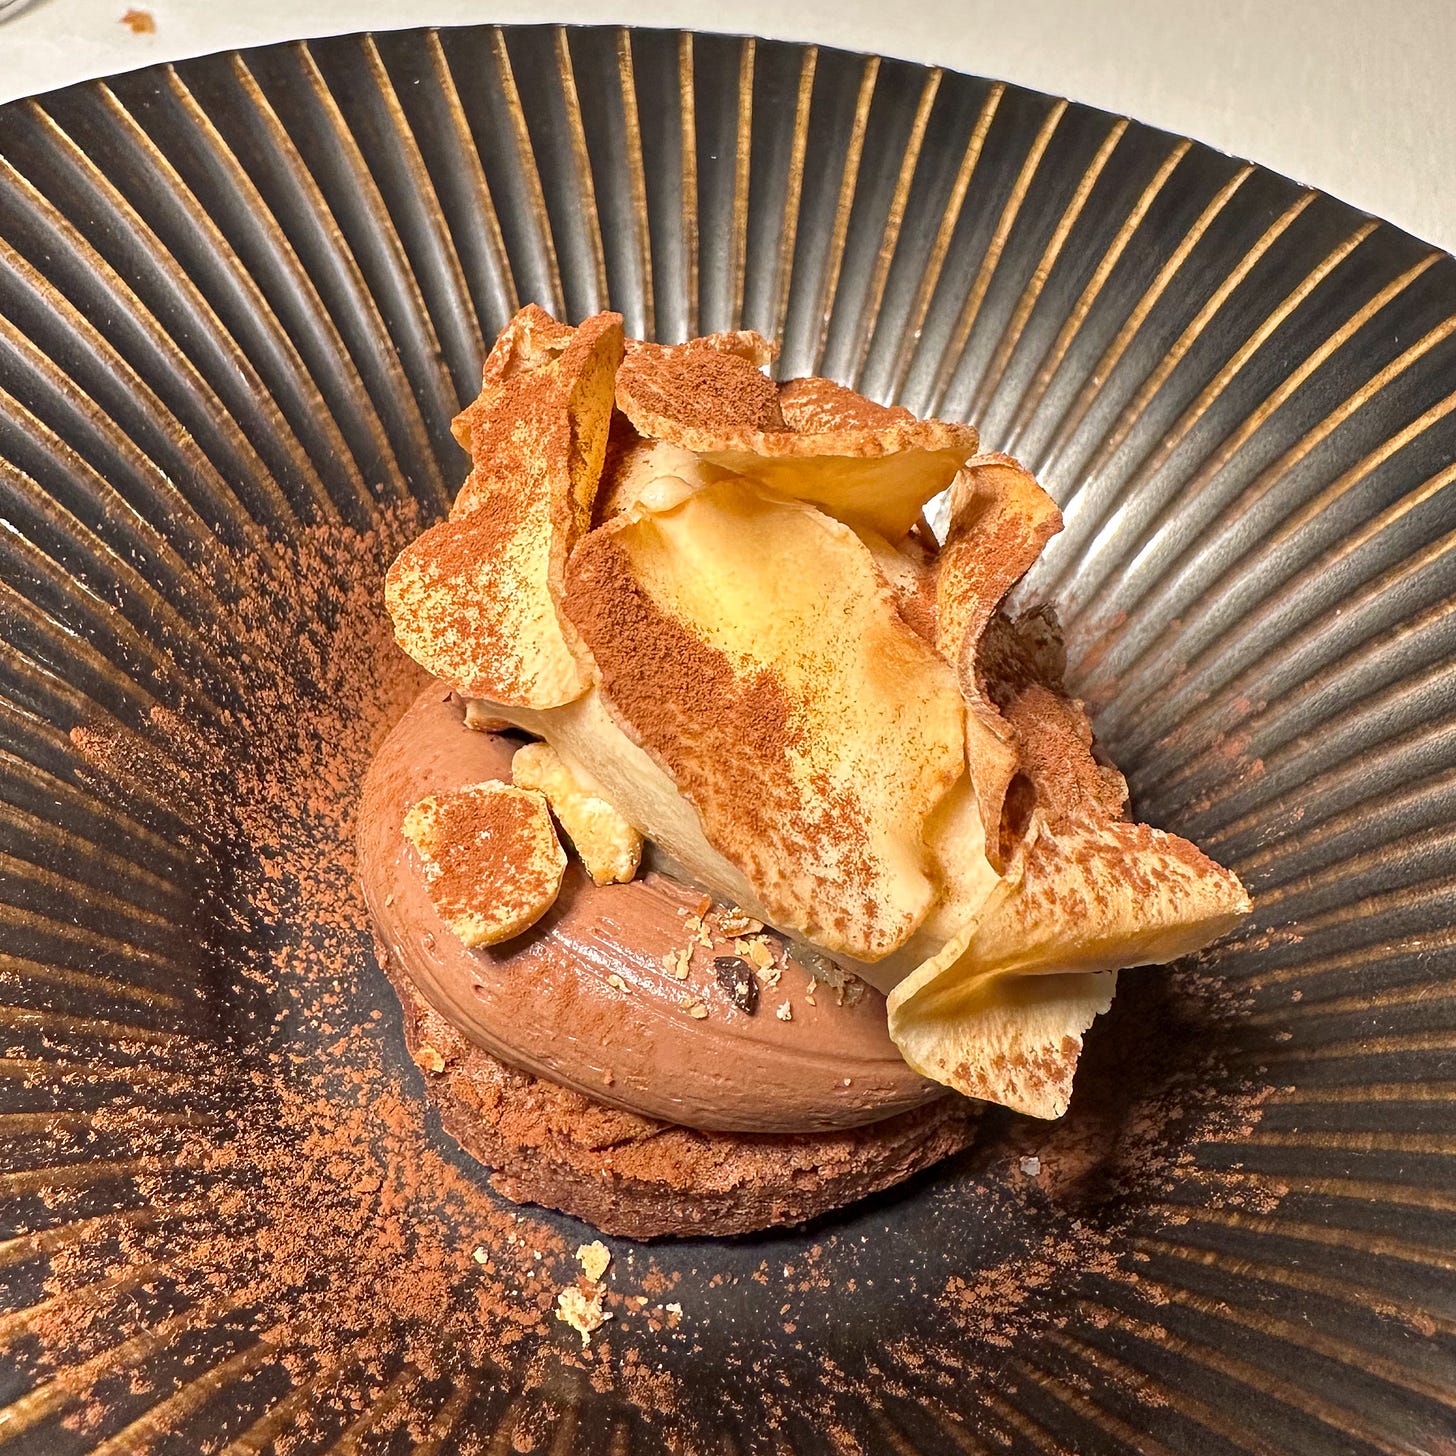 caramelized sunchokes with chocolate mousse and hazelnut ice cream at Amalia restaurant in Paris